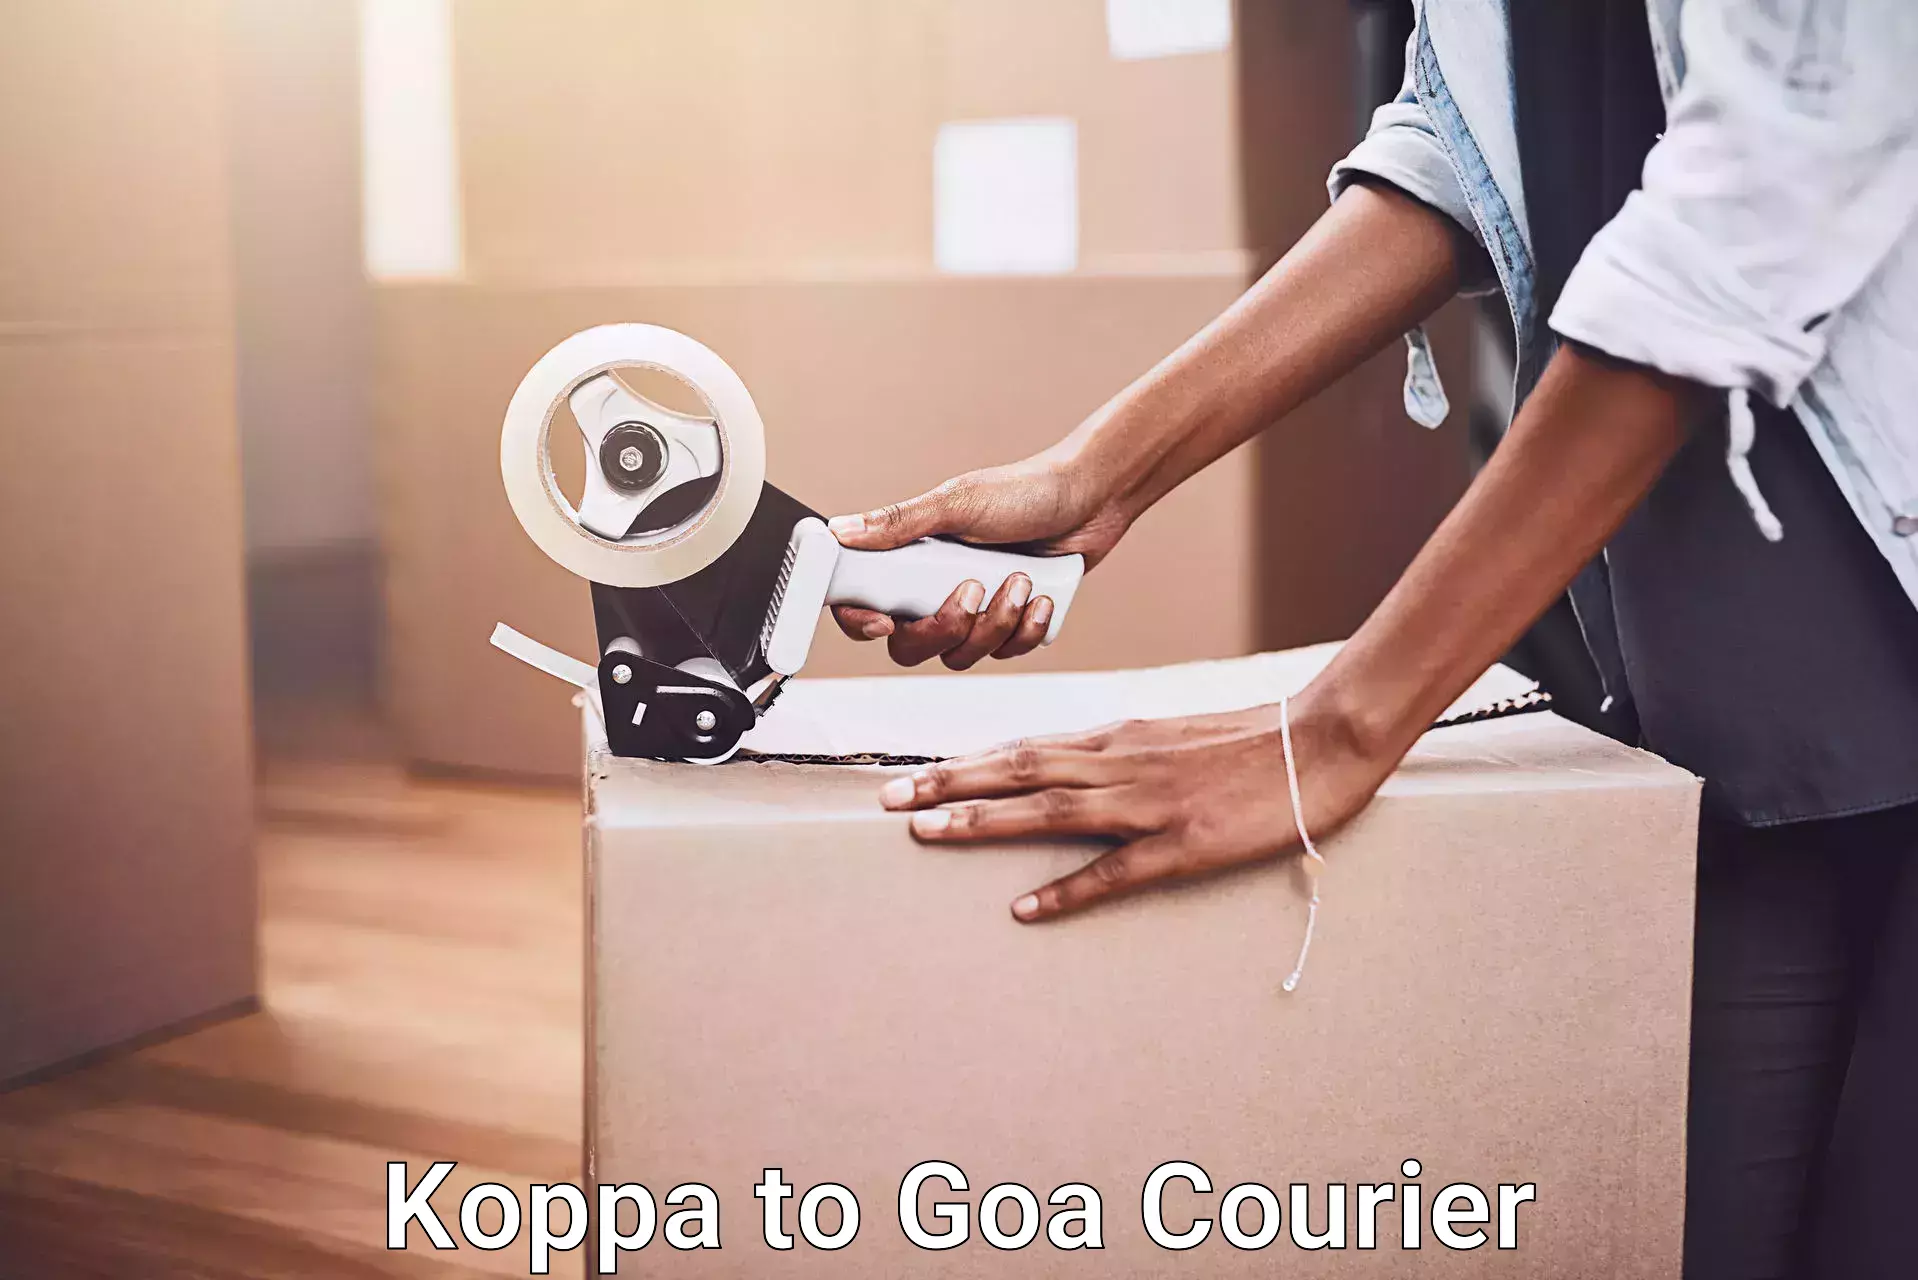 Hassle-free relocation Koppa to Goa